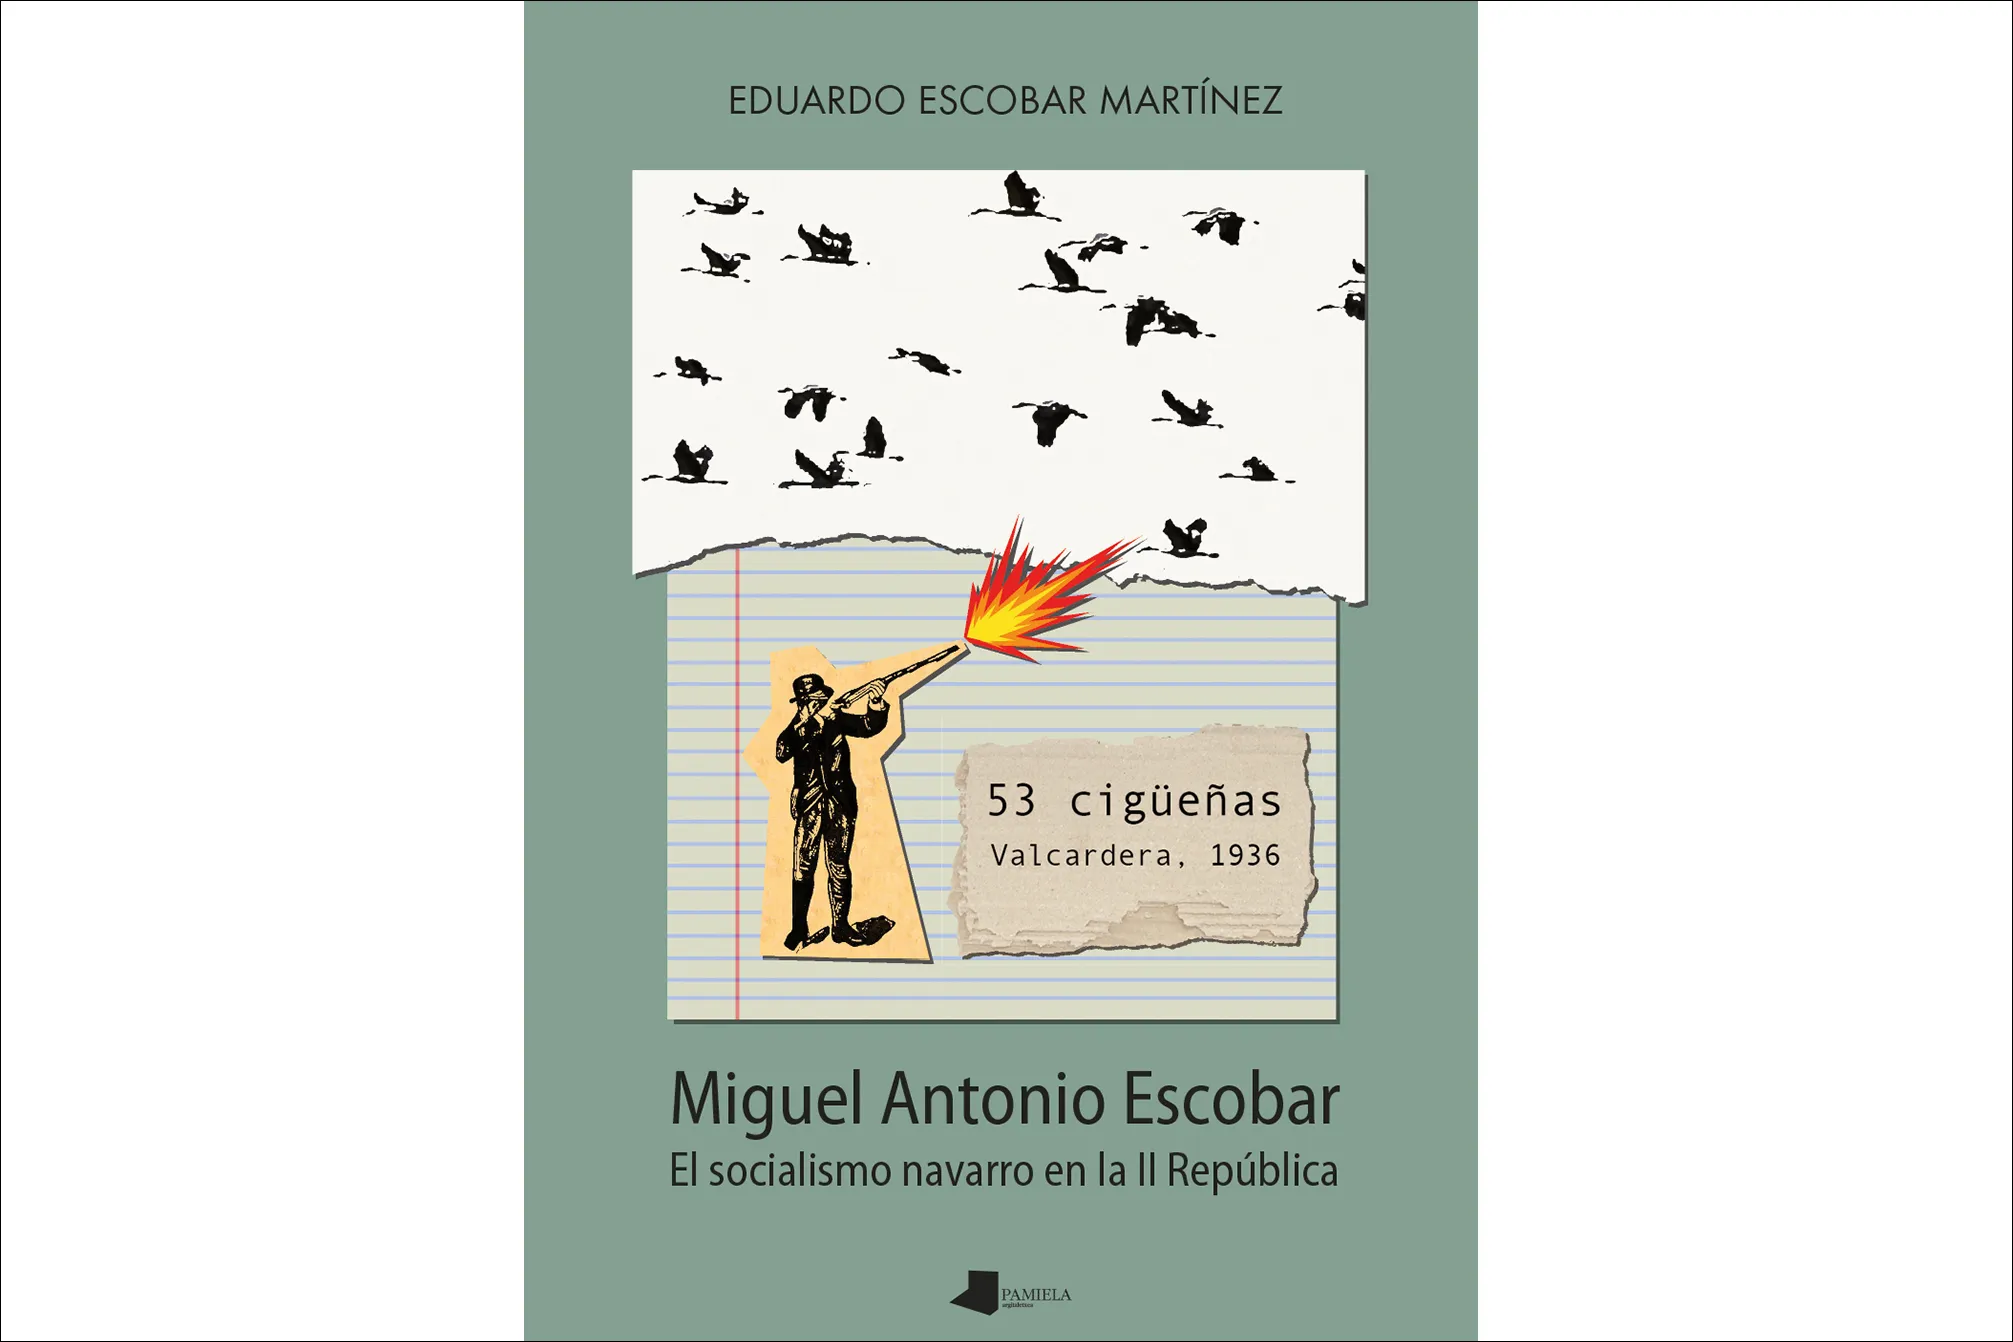 Presentación del libro "Miguel Antonio Escobar. El socialismo navarro en la II República"